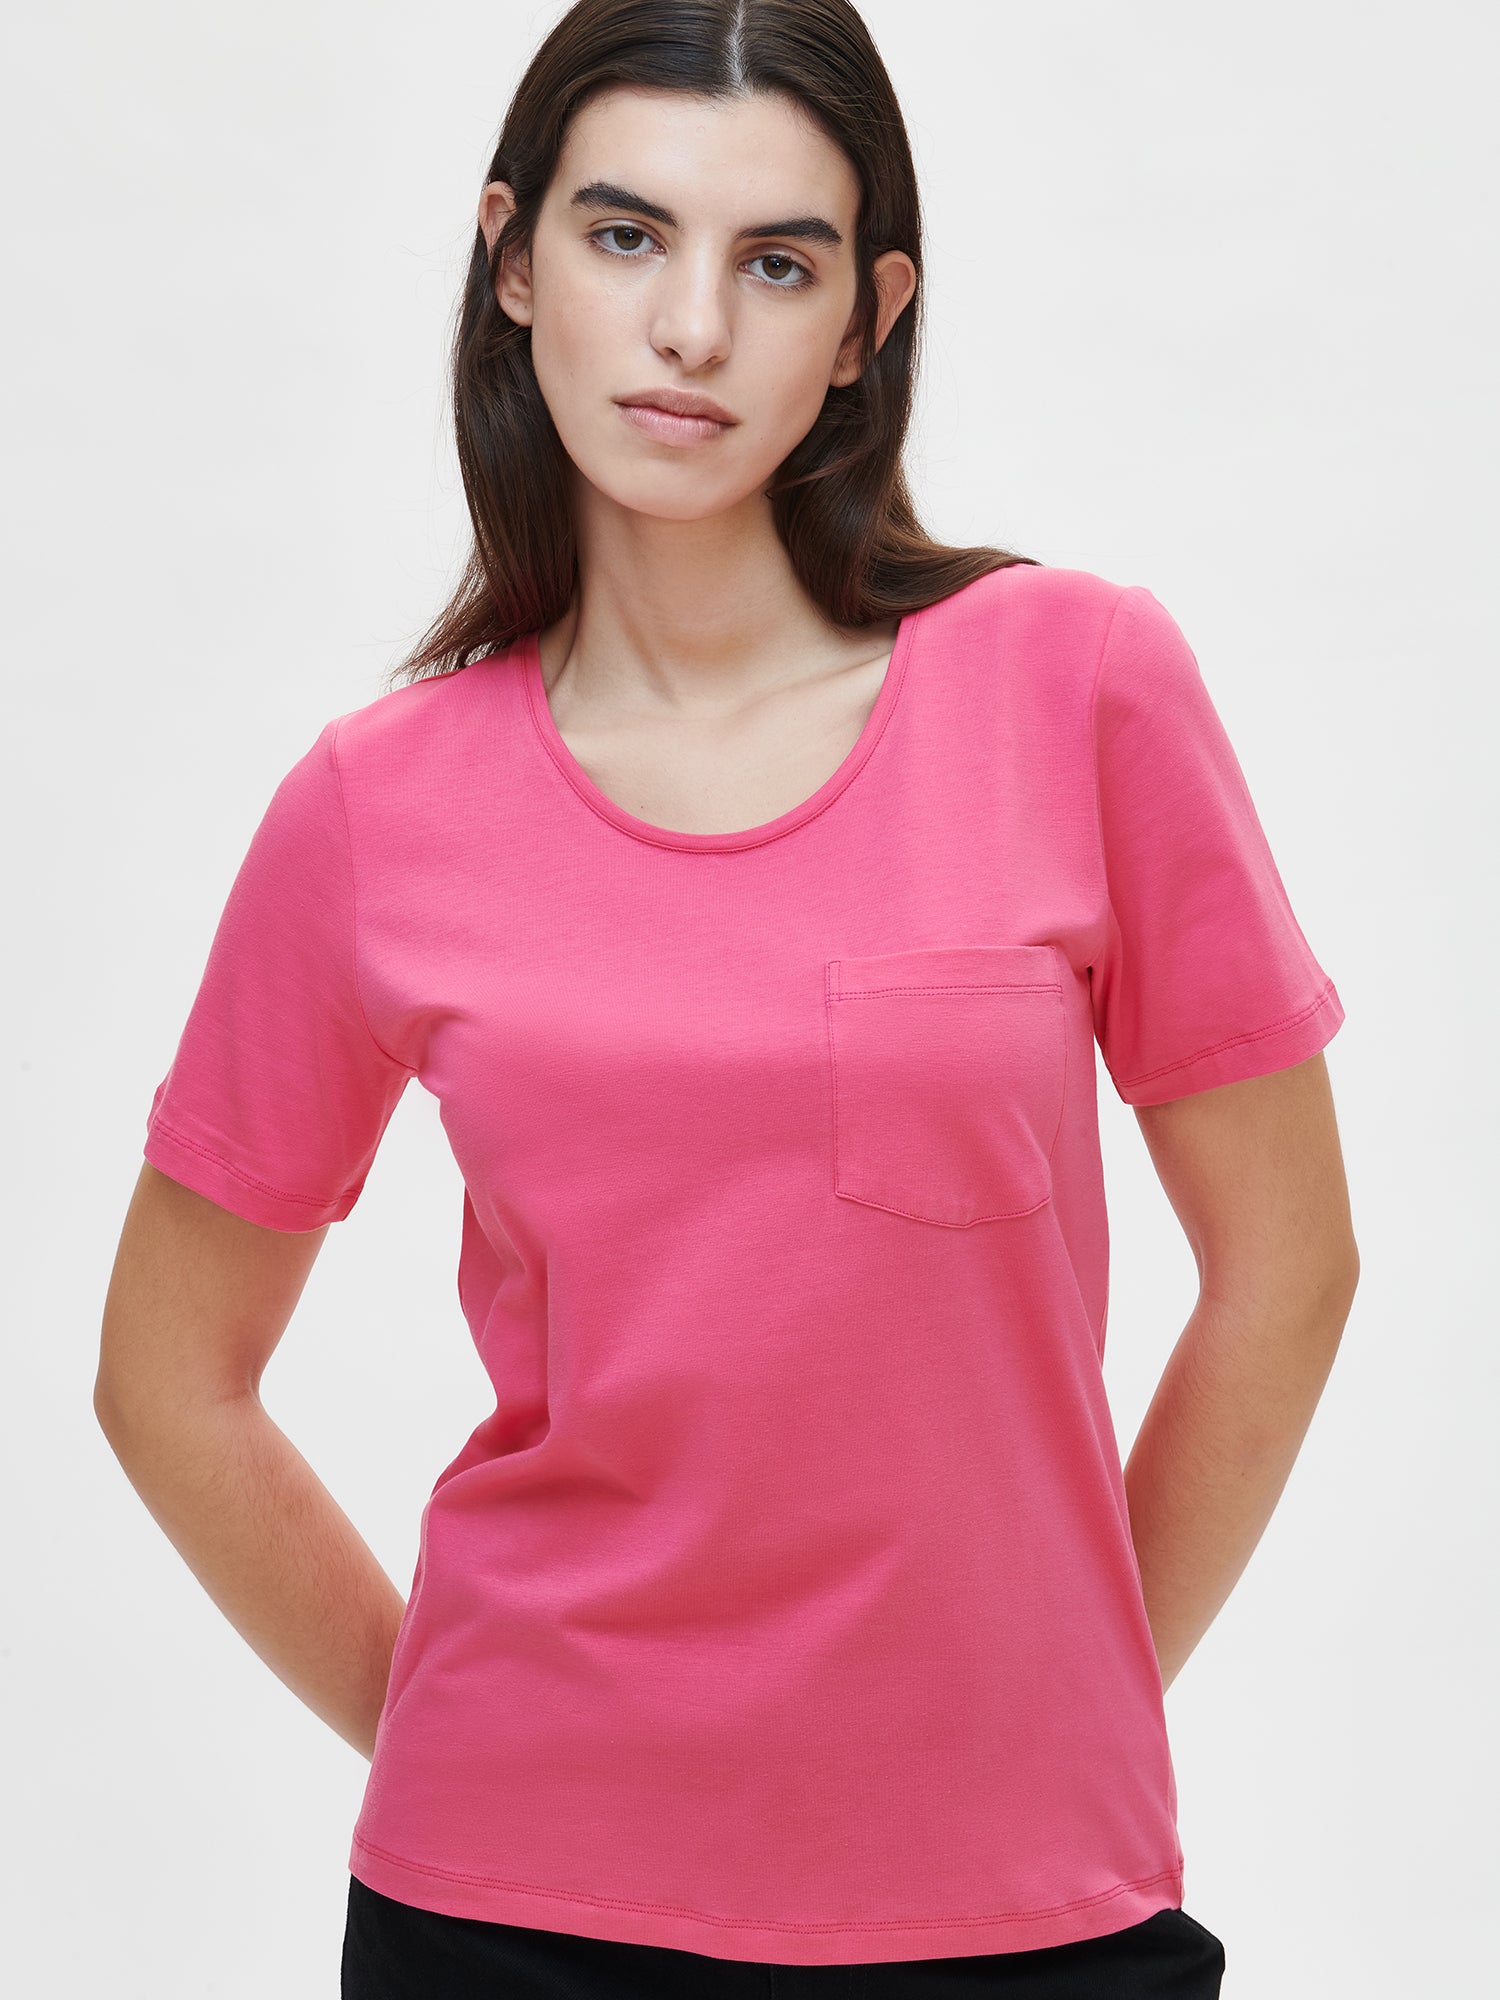 Nanson naisten raikas pinkki Tasku t-paita pyöreällä pääntiellä.